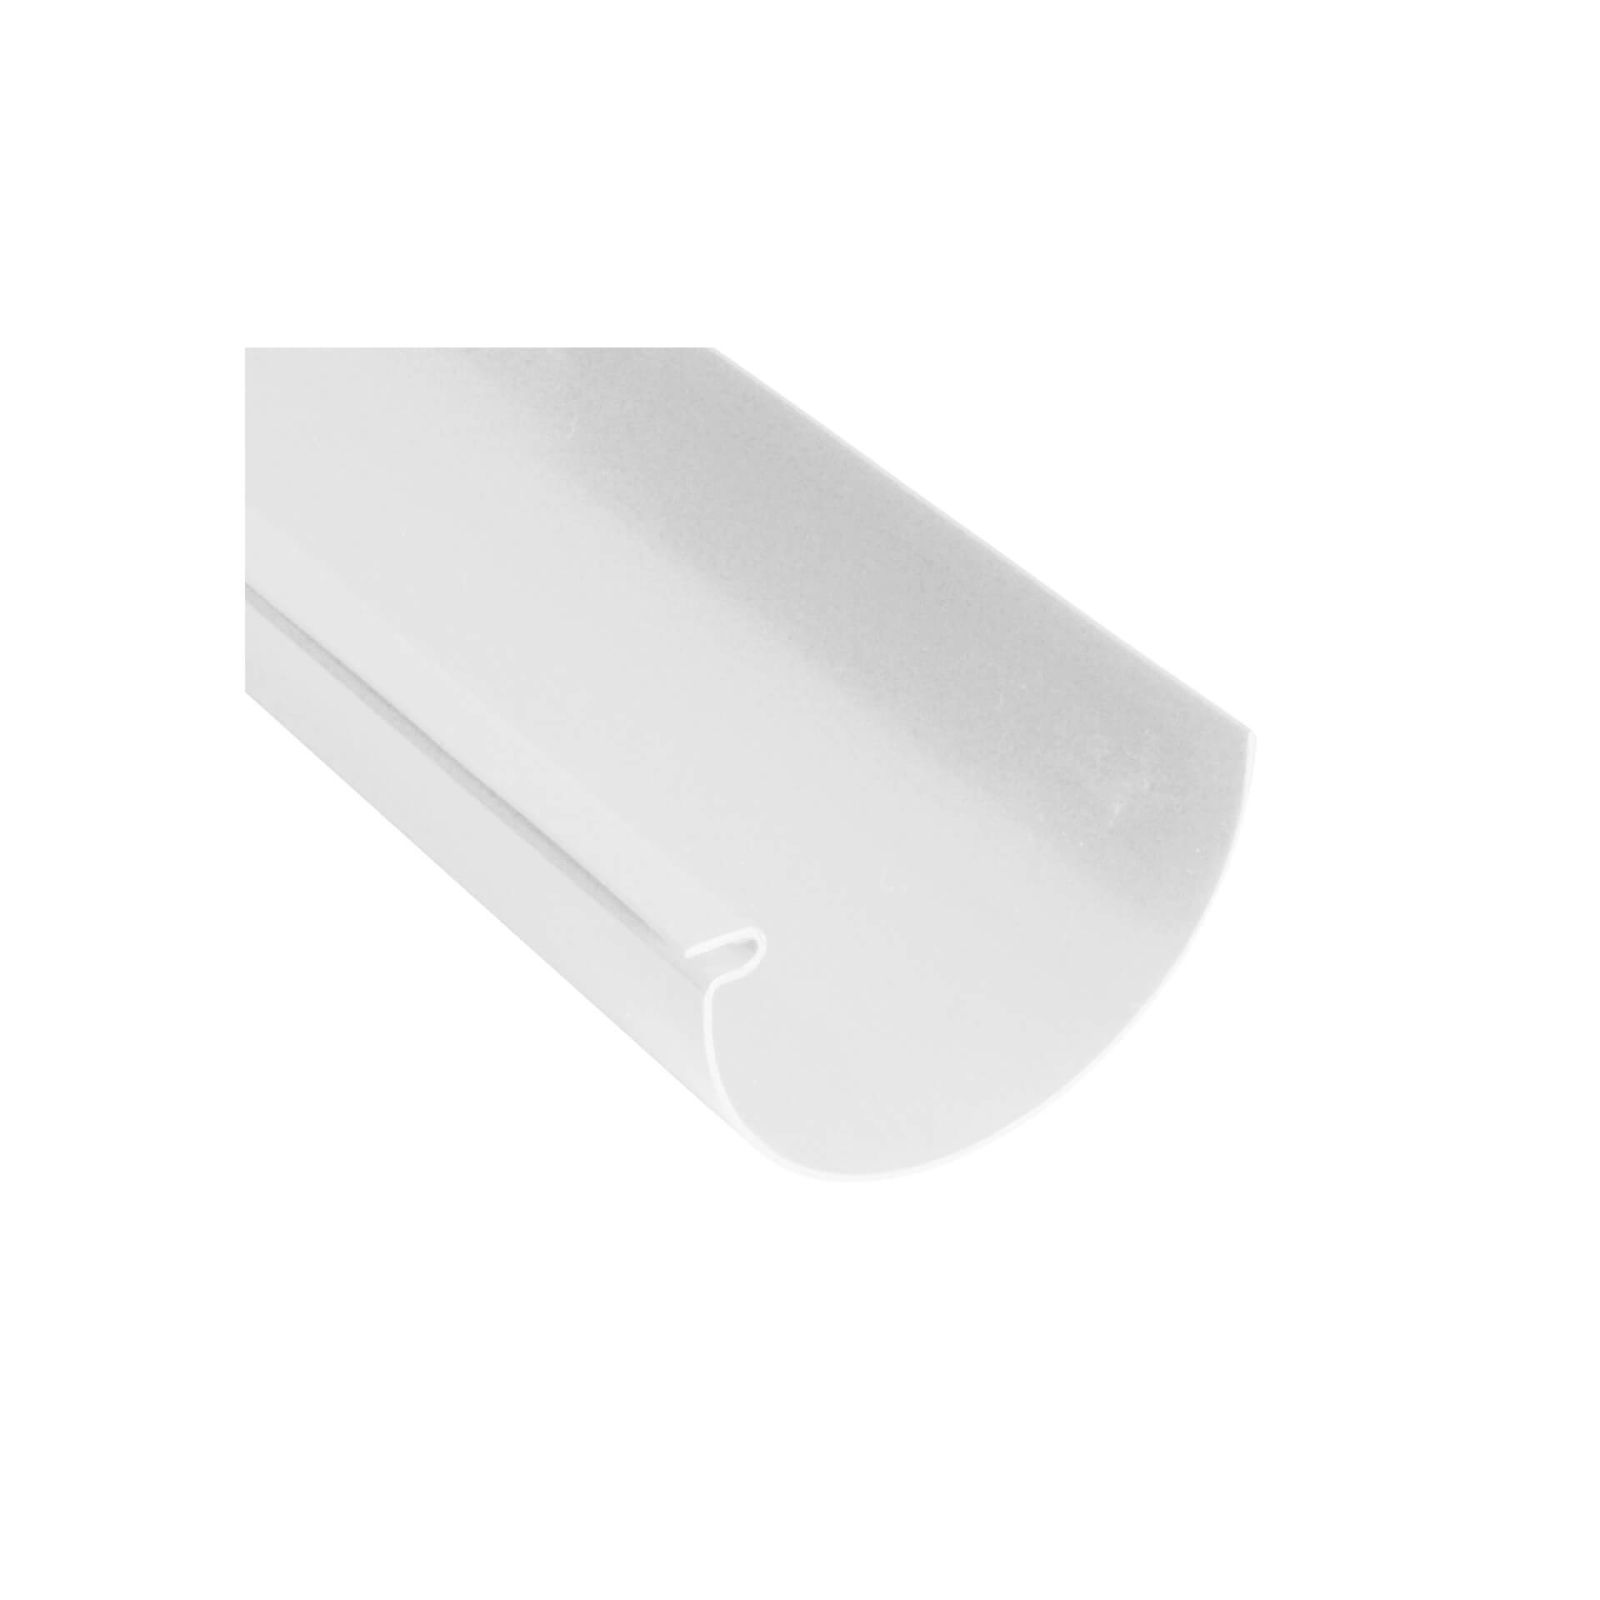 Kunststoff Dachrinnen Sparpaket 10 m | Ø 100/75 mm | Farbe Weiß